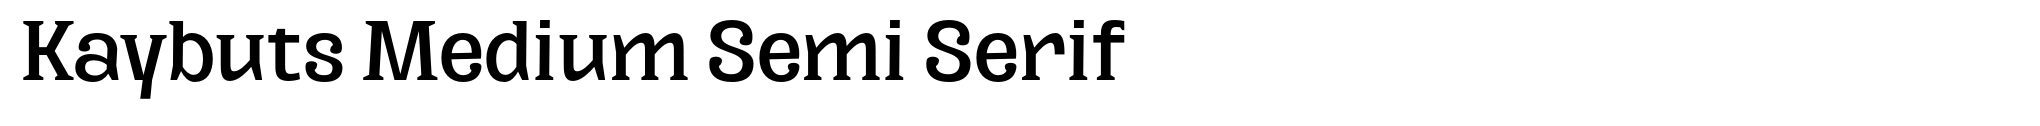 Kaybuts Medium Semi Serif image